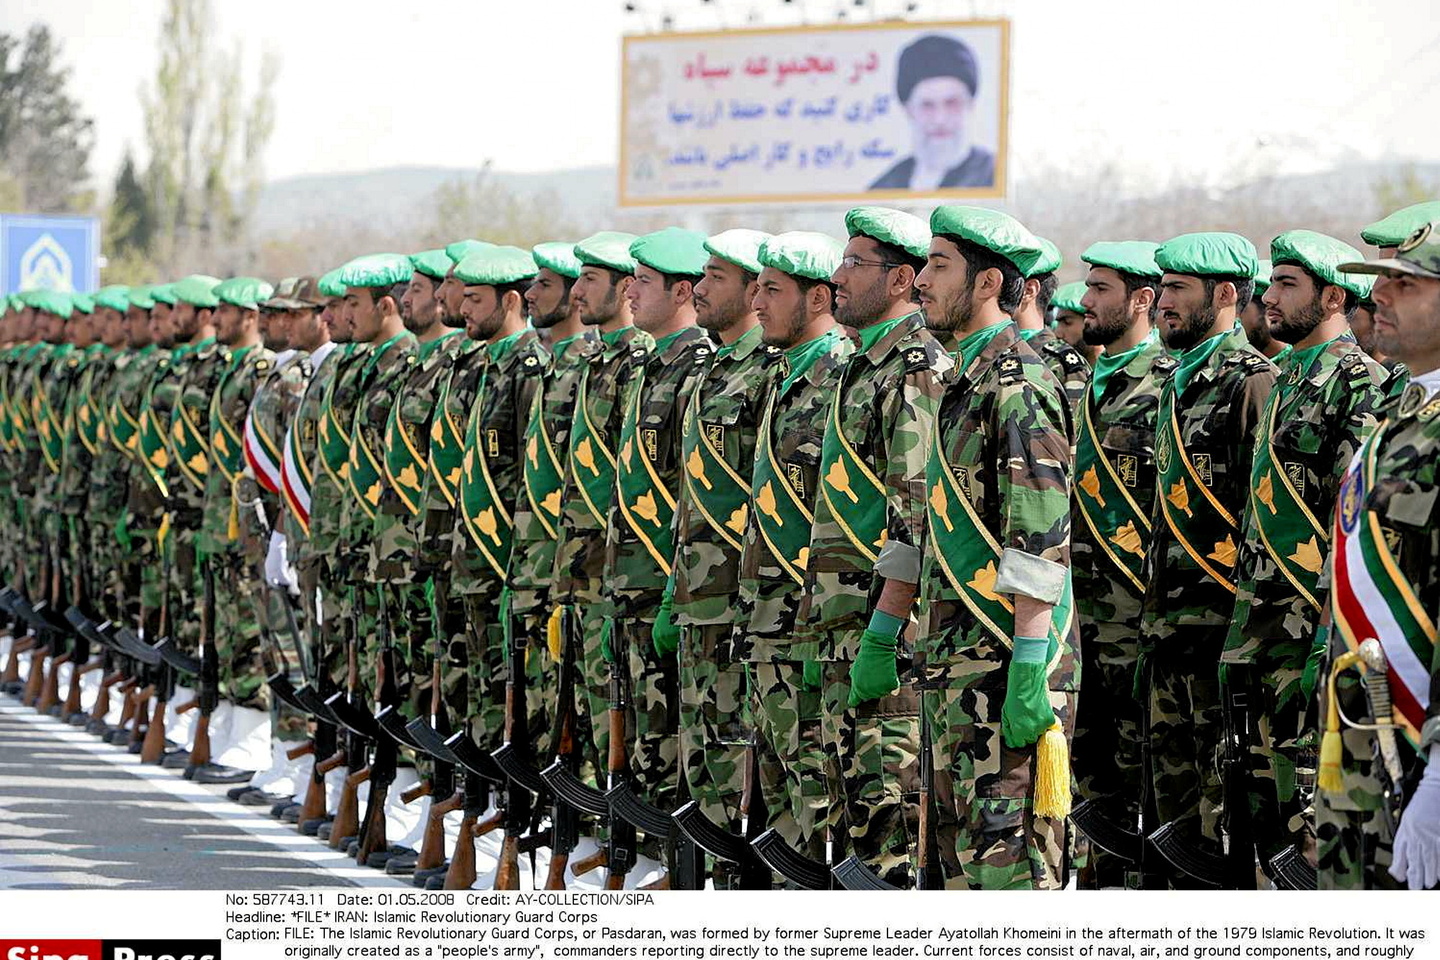 “L’Europa deve riconoscere la Guardia rivoluzionaria iraniana come organizzazione terroristica”.